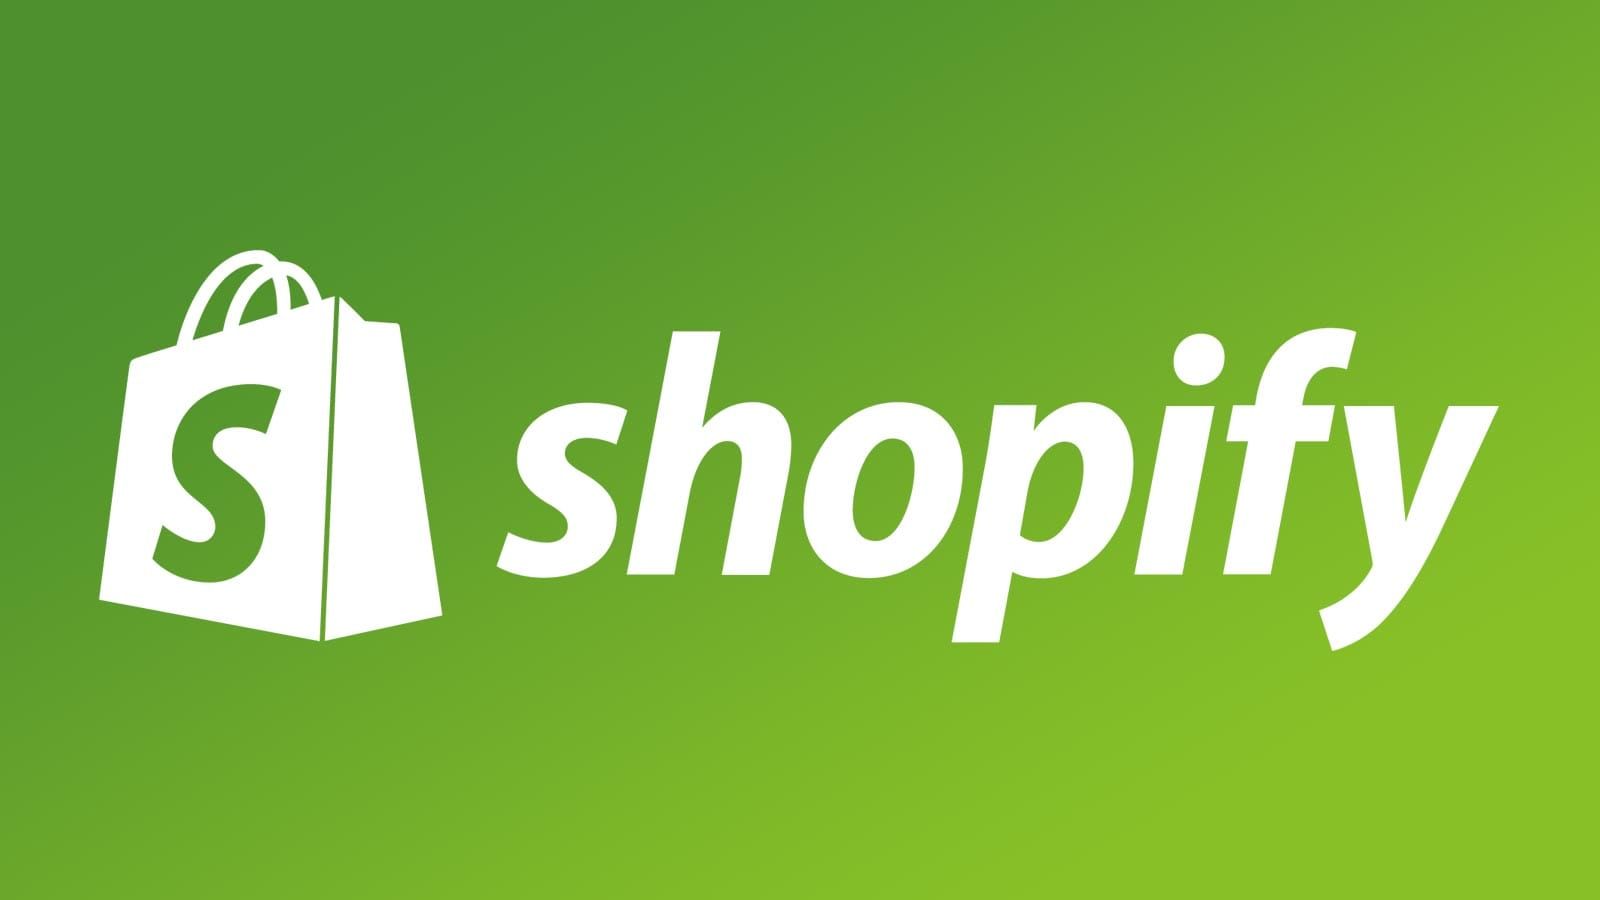 Het shopify-logo is wit op een groene achtergrond.